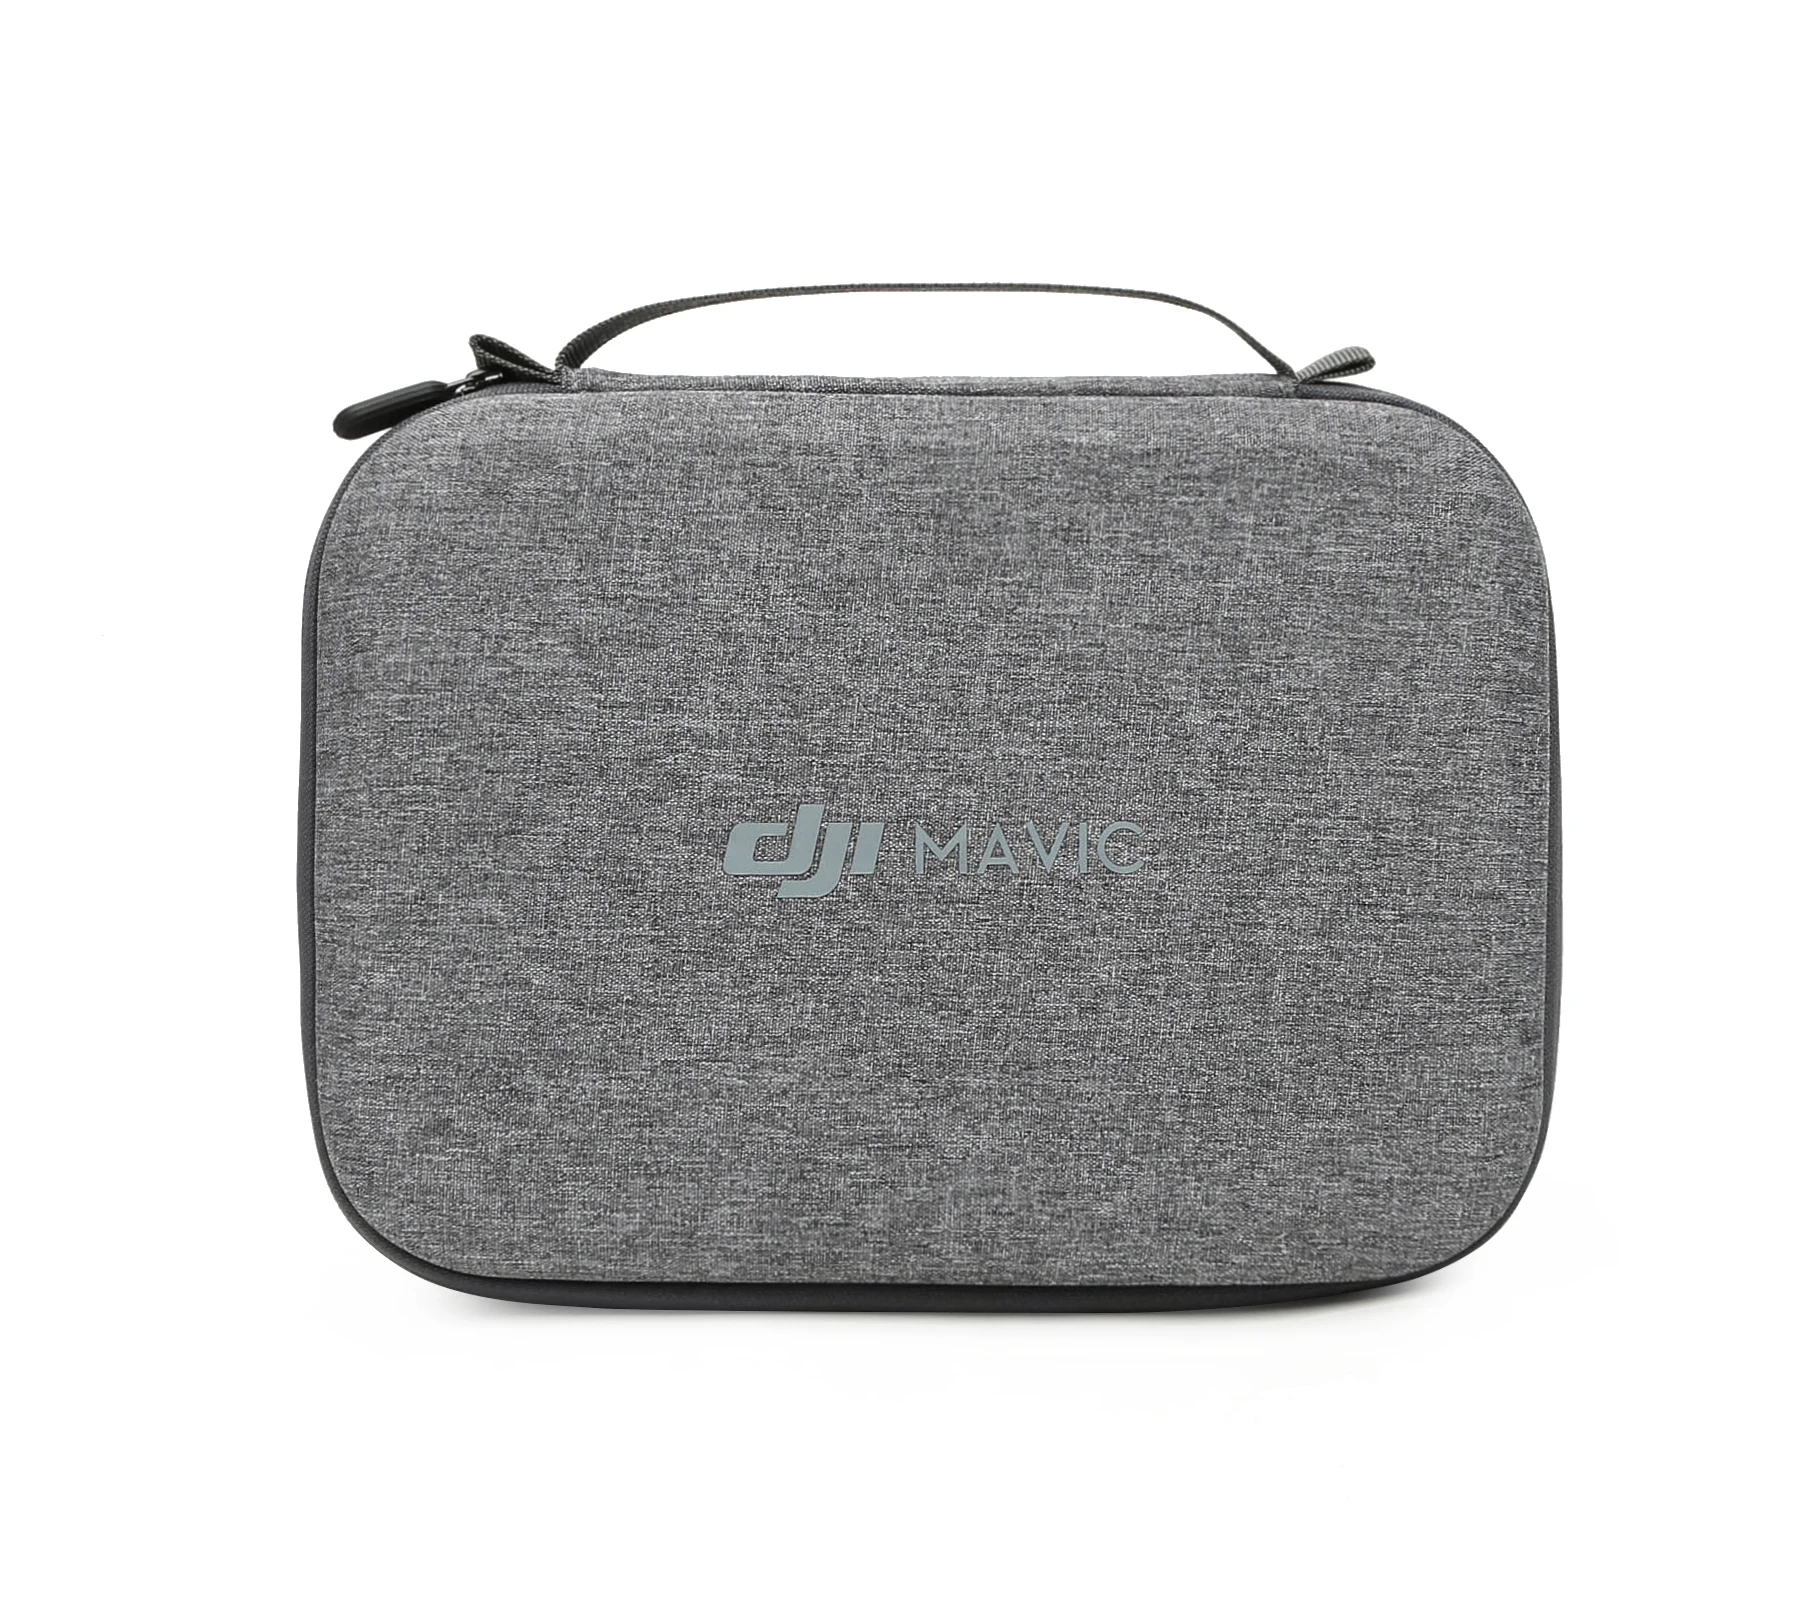 Mavic Mini Carrying Case Storage Bag for DJI Mavic Mini Portable package Box Drone Accessories Non-original